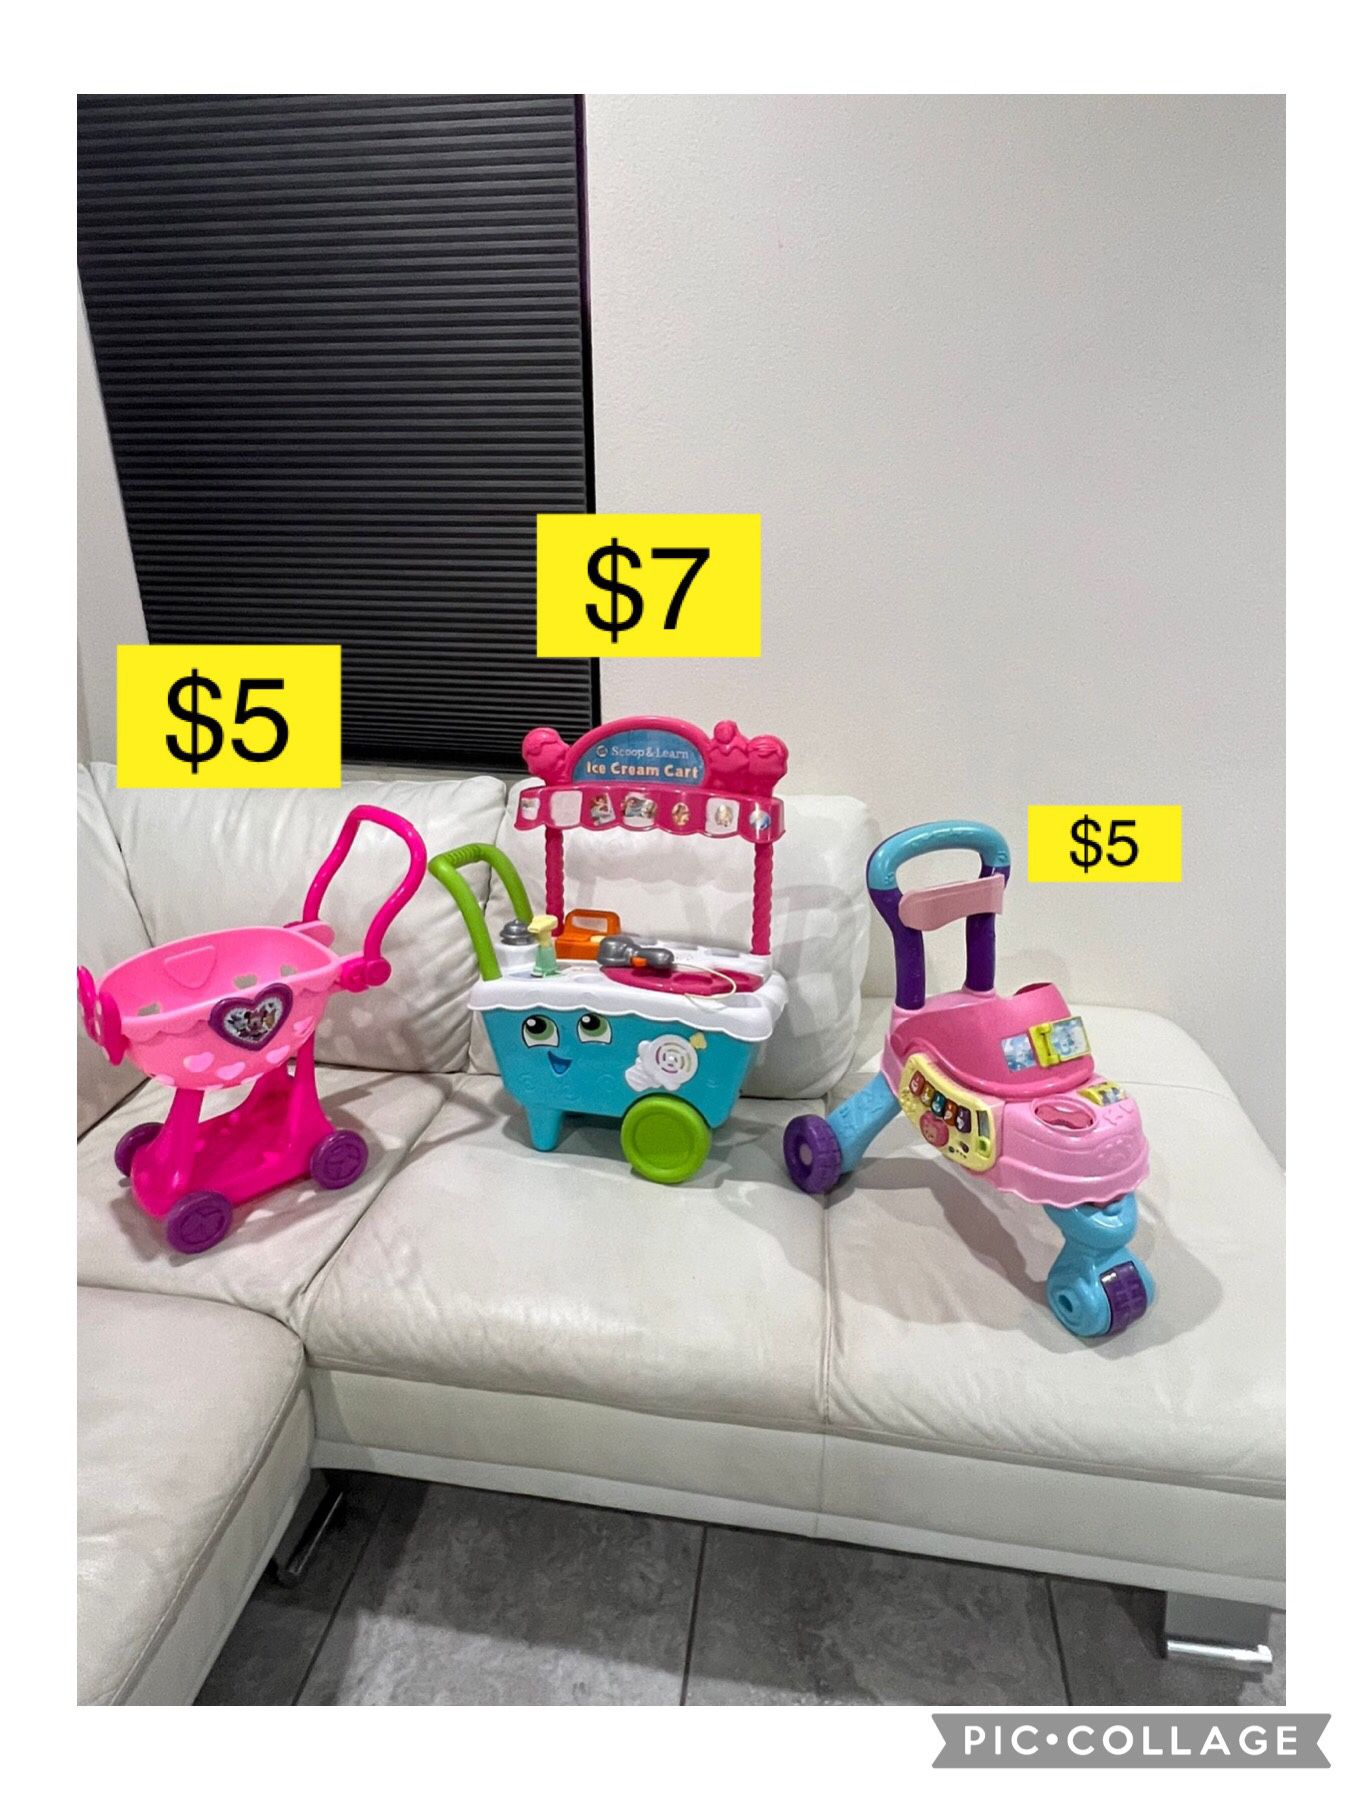 Kids toys shopping cart $5 Each / Juguetes Niña $5 Cada Uno